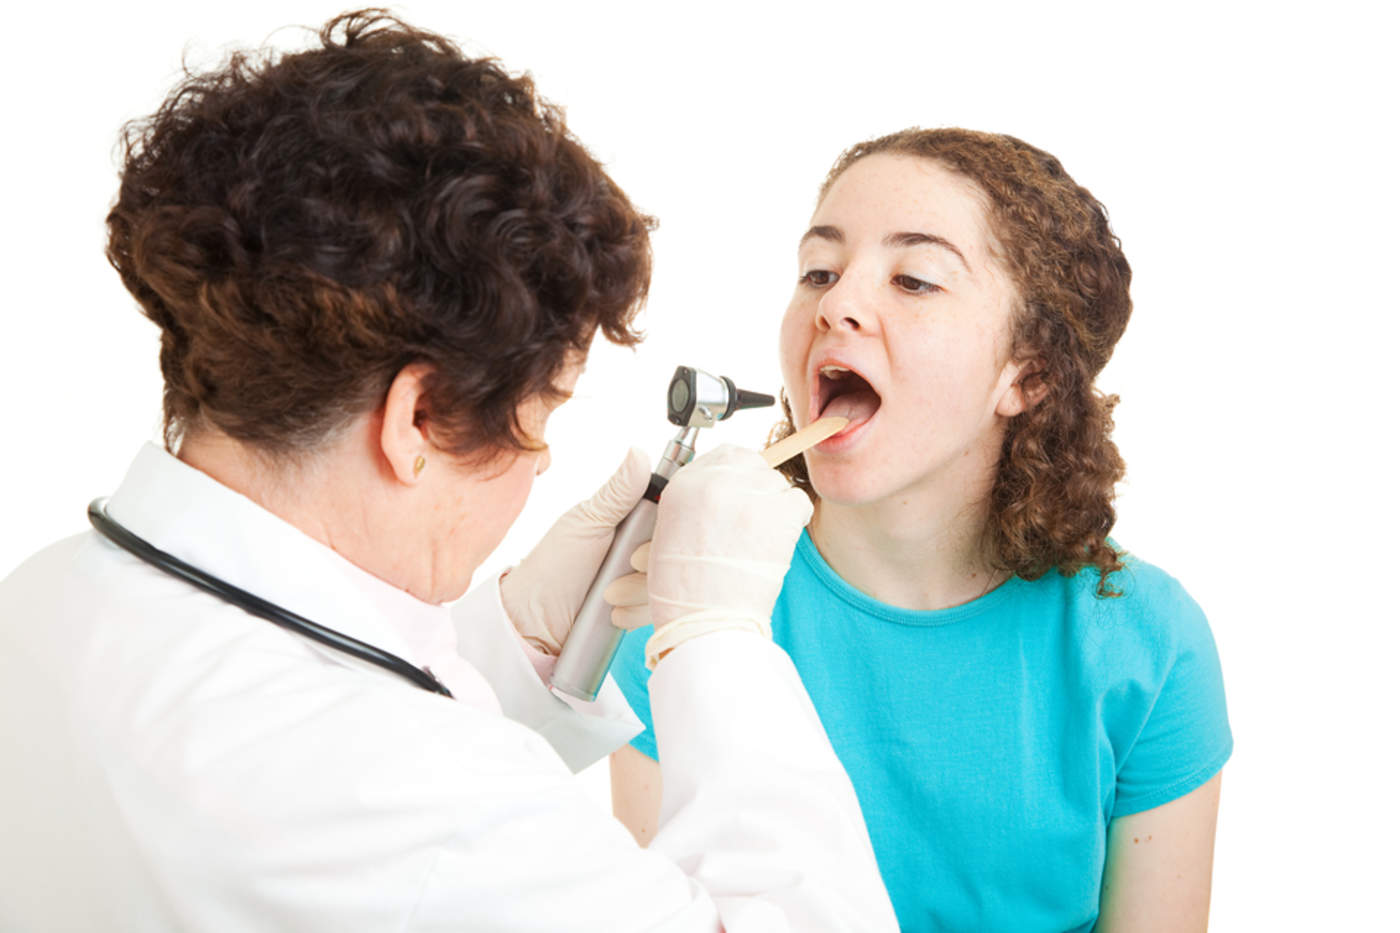 Si persiste a pesar de una adecuada higiene bucal es necesario acudir a revisión médica. (ARCHIVO)